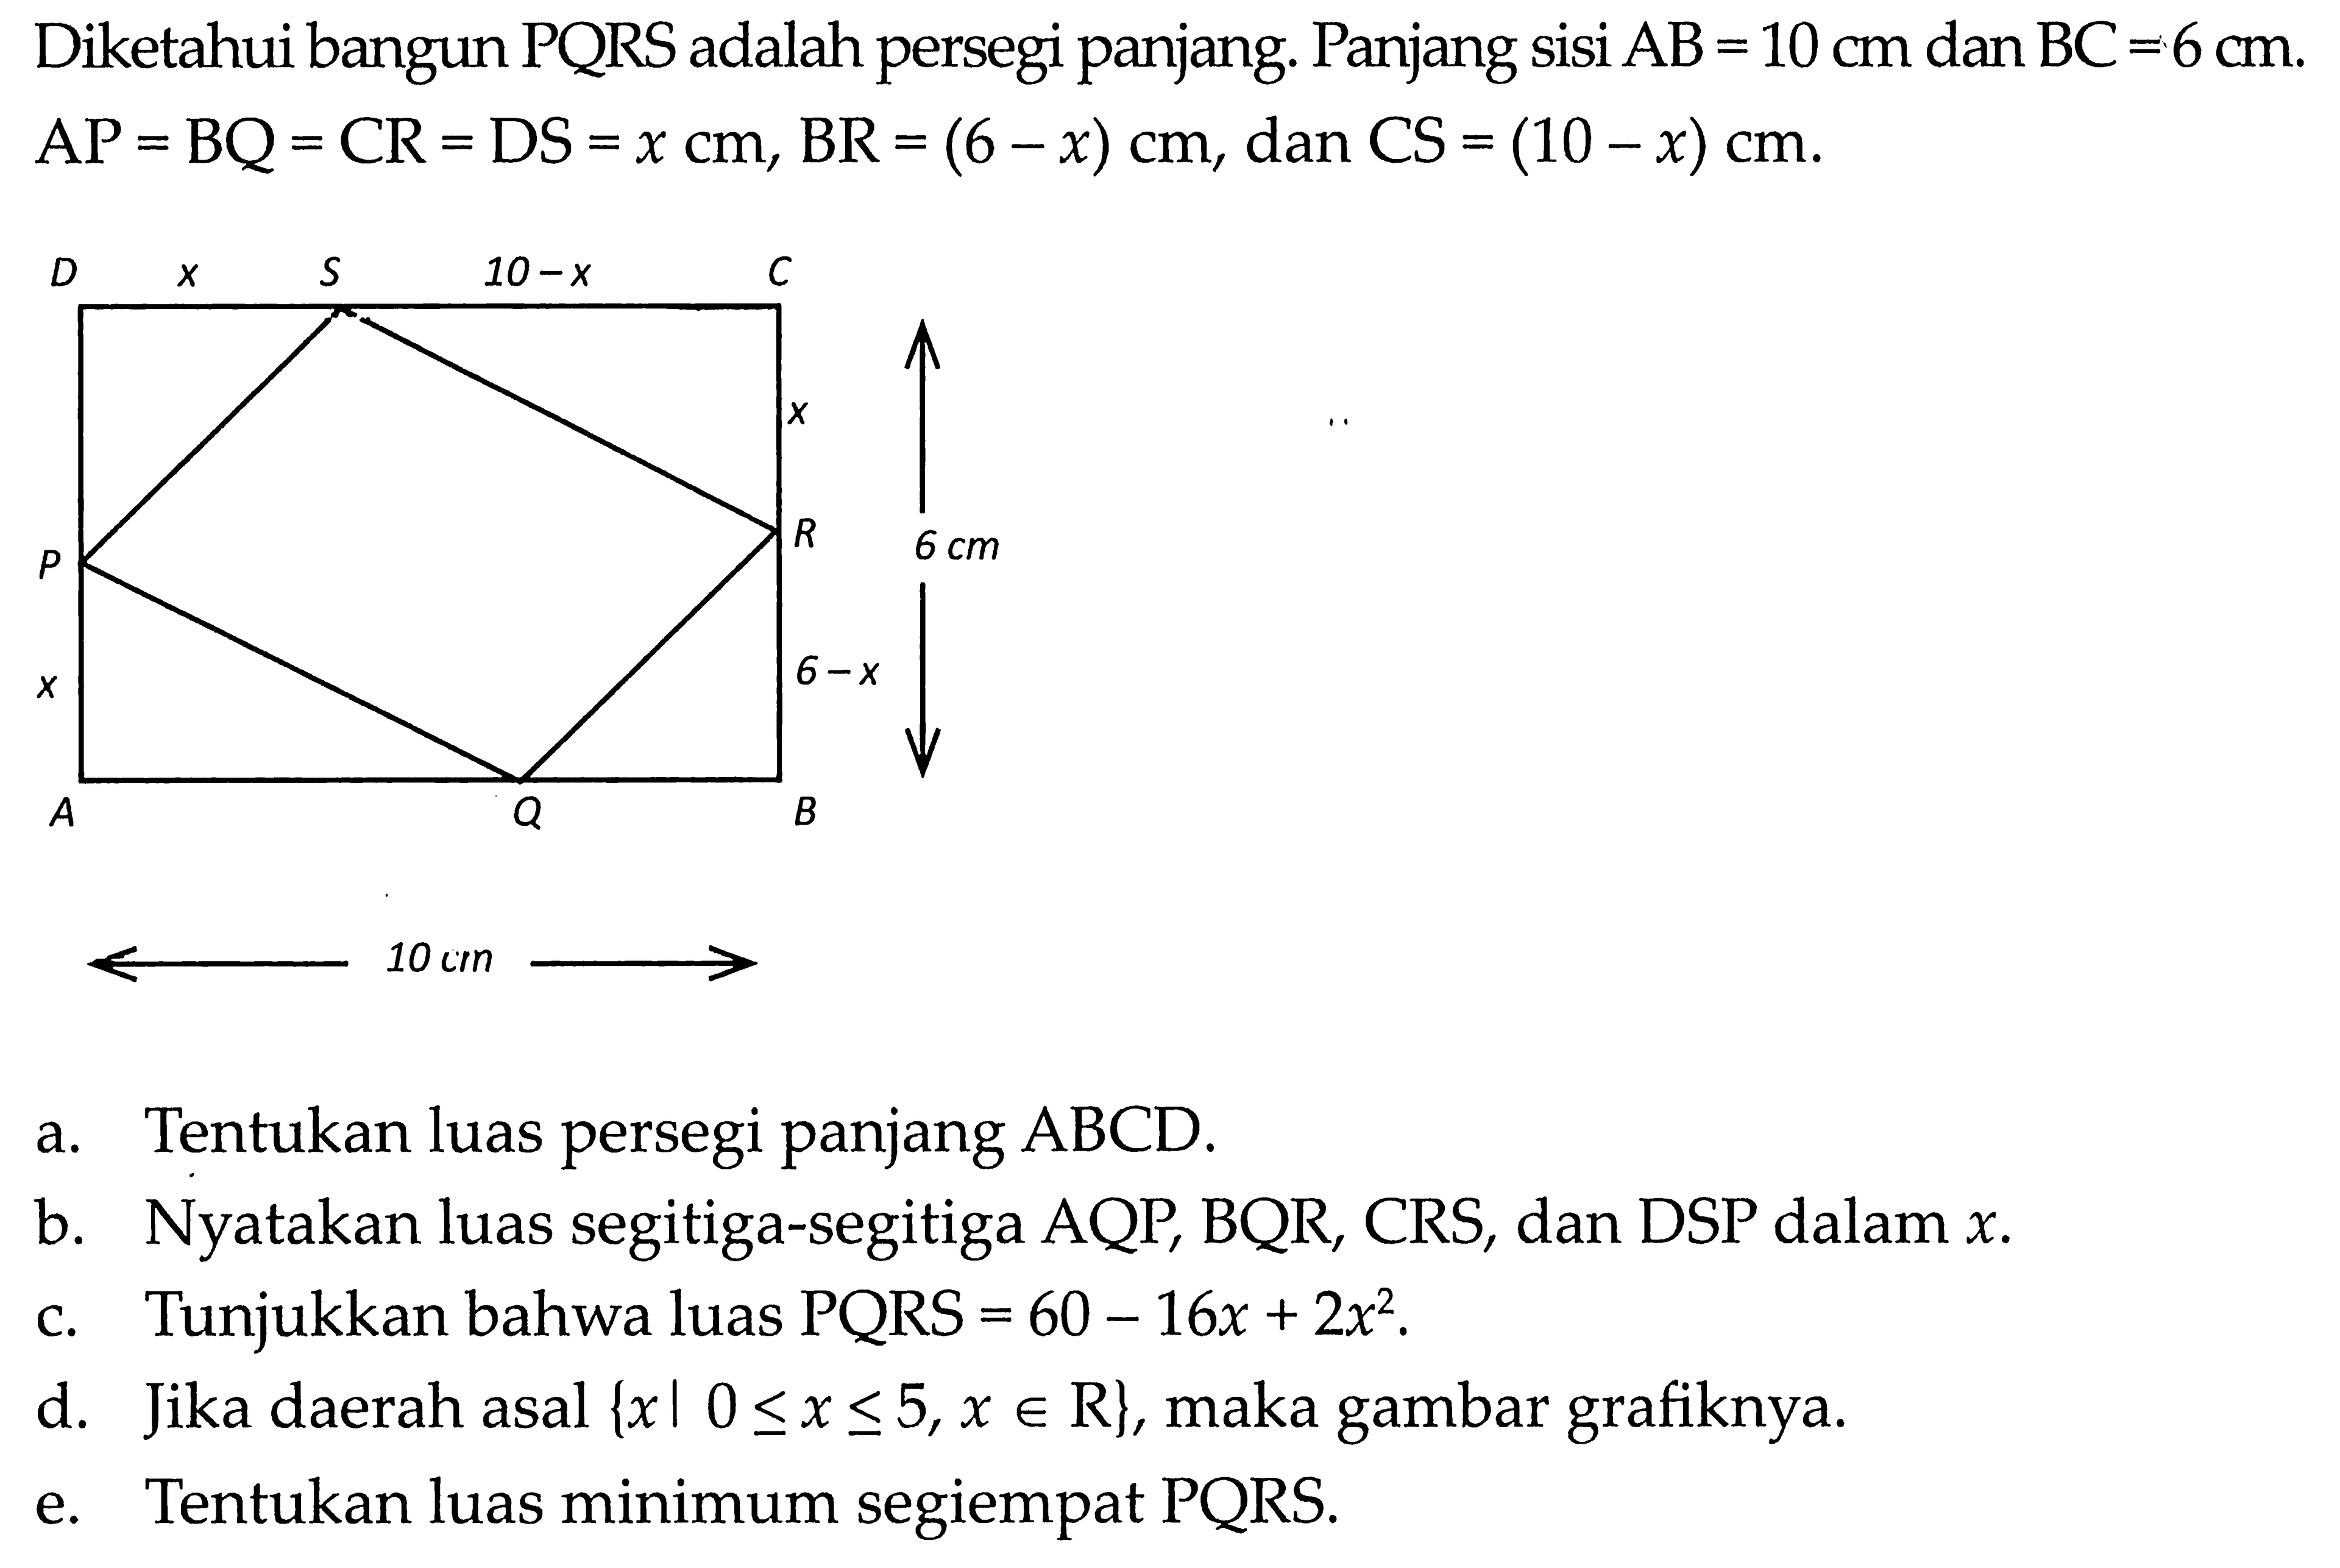 Diketahui bangun PQRS adalah persegi panjang. Panjang sisi AB = 10 cm dan BC = 6 cm. AP = BQ = CR = DS = x cm, BR = (6 - x) cm, dan CS = (10 - x) cm. a. Tentukan luas persegi panjang ABCD. b. Nyatakan luas segitiga-segitiga AQP, BQR, CRS, dan DSP dalam x. c. Tunjukkan bahwa luas PQRS = 60 - 16x + 2x^2. d. Jika daerah asal {xl 0 <= x <= 5, x e R}, maka gambar grafiknya. e. Tentukan luas minimum segiempat PQRS.